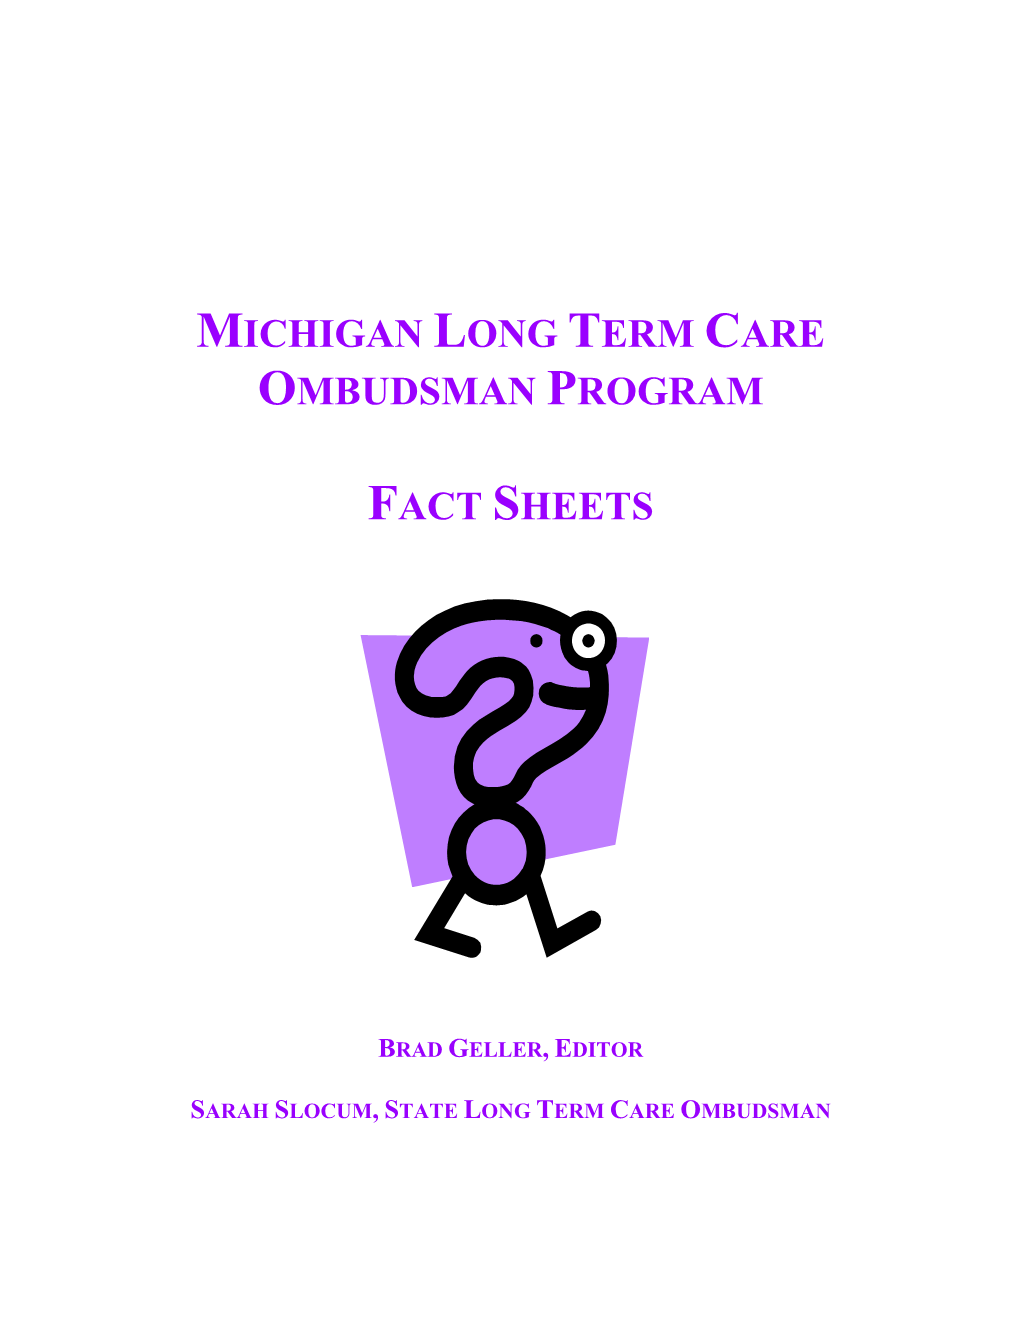 Michigan Long Term Care Ombudsman Program Fact